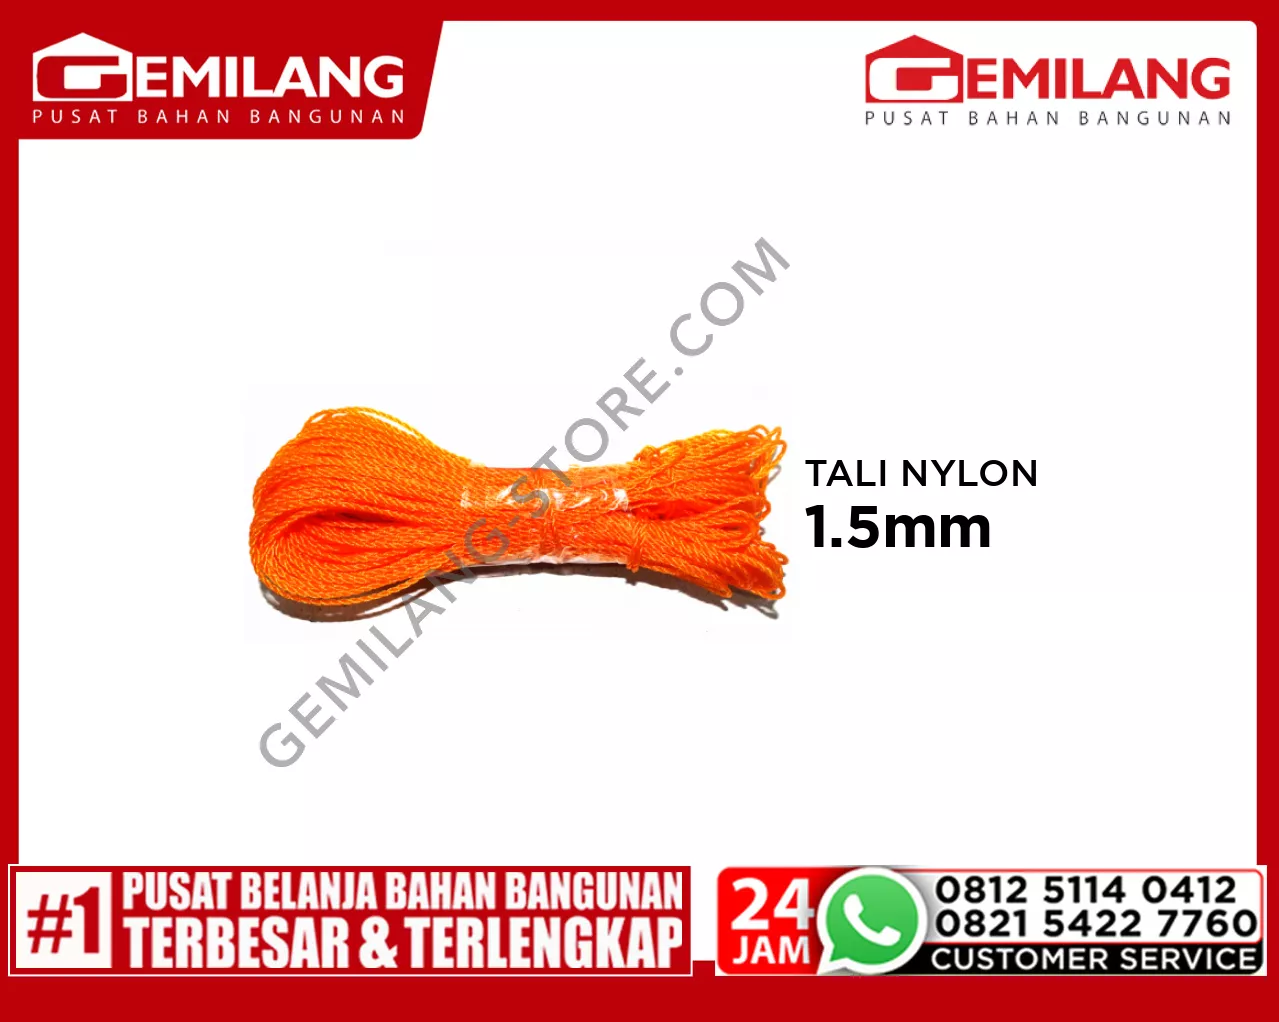 TALI NYLON 1.5mm